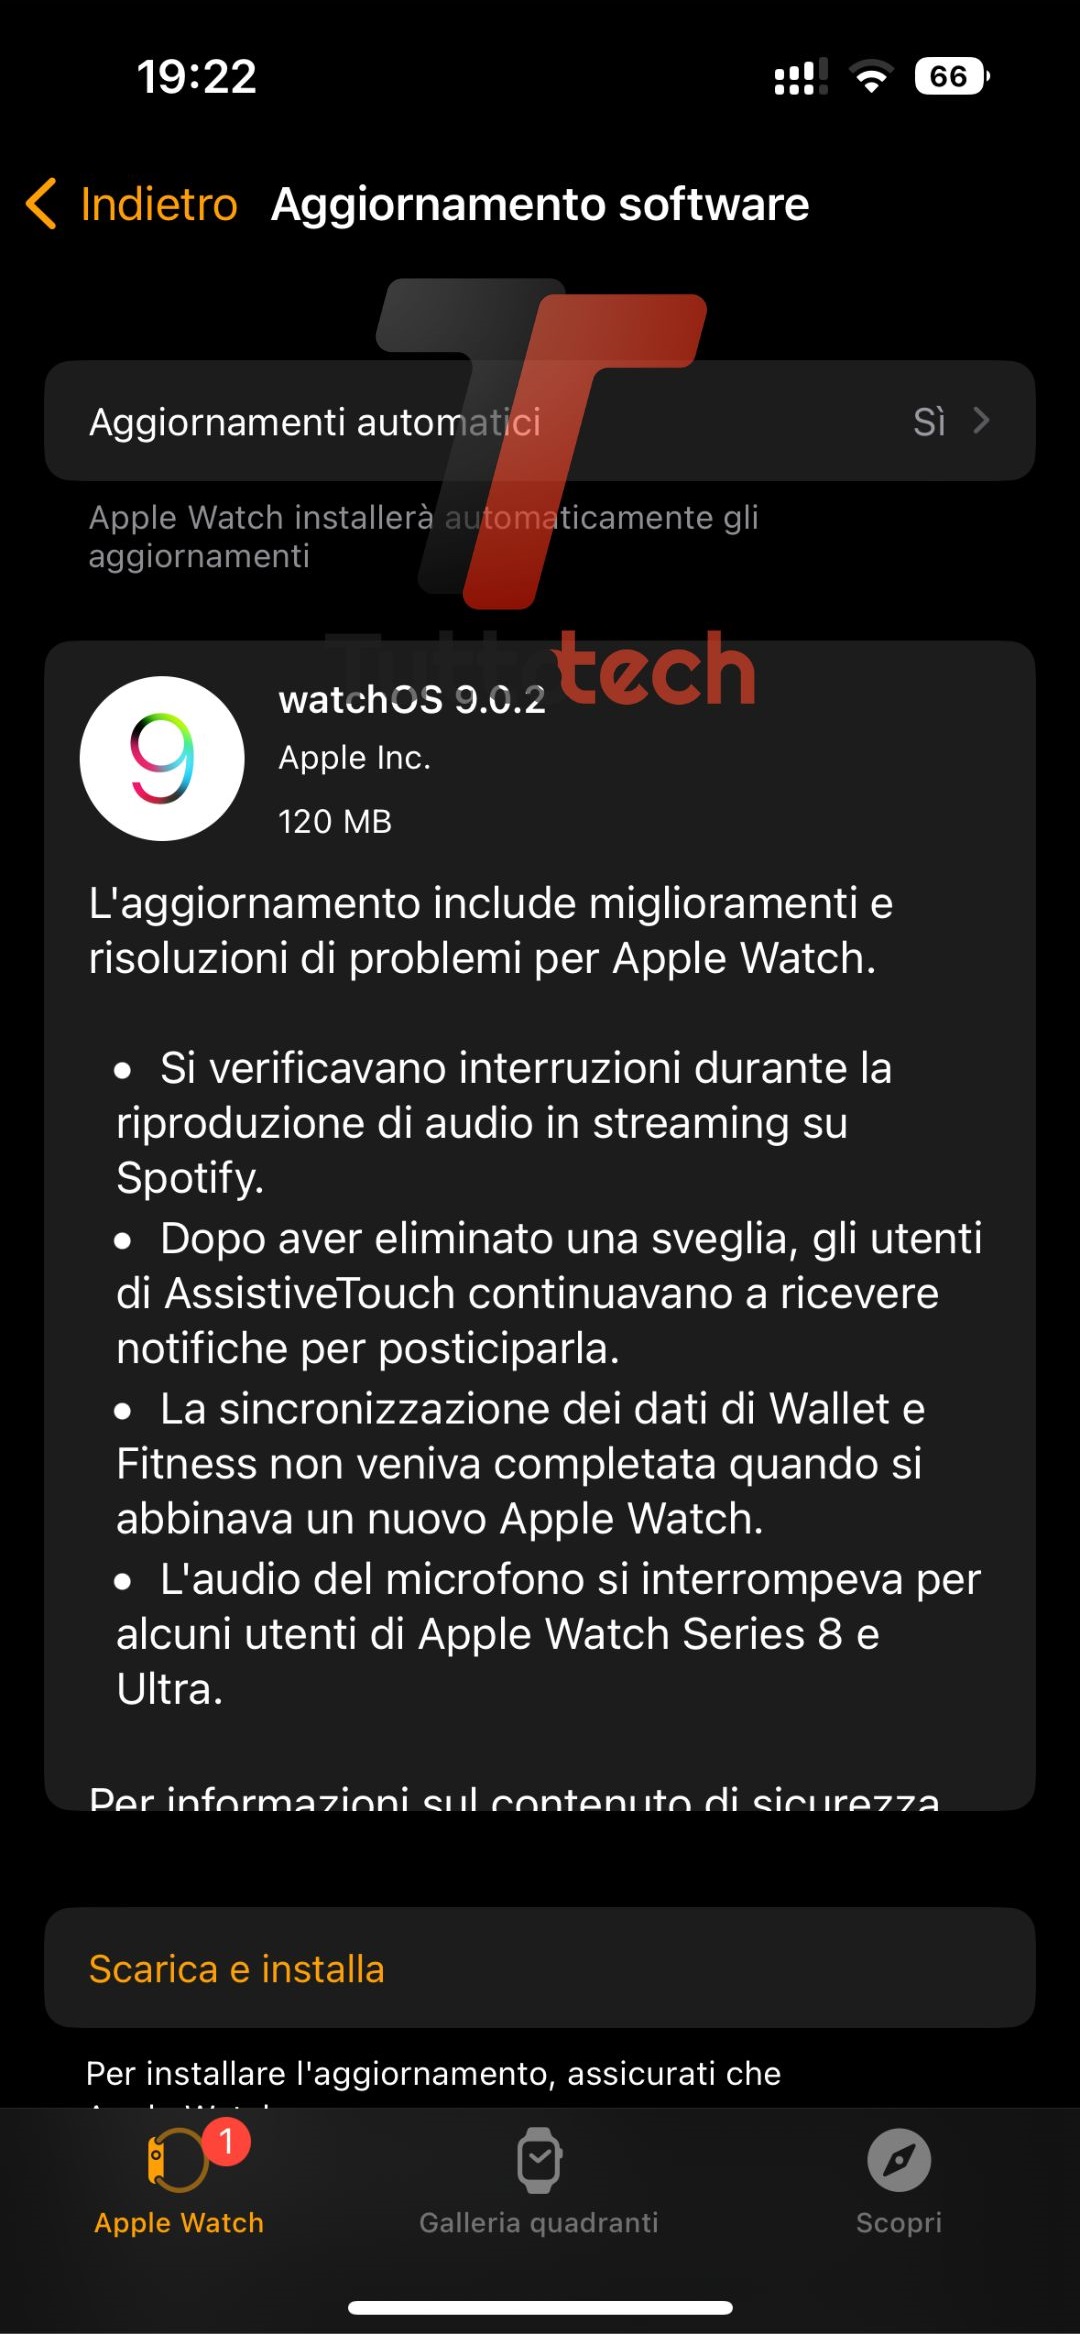 Il changelog di watchOS 9.0.2, rilasciato su tutti gli Apple Watch compatibili